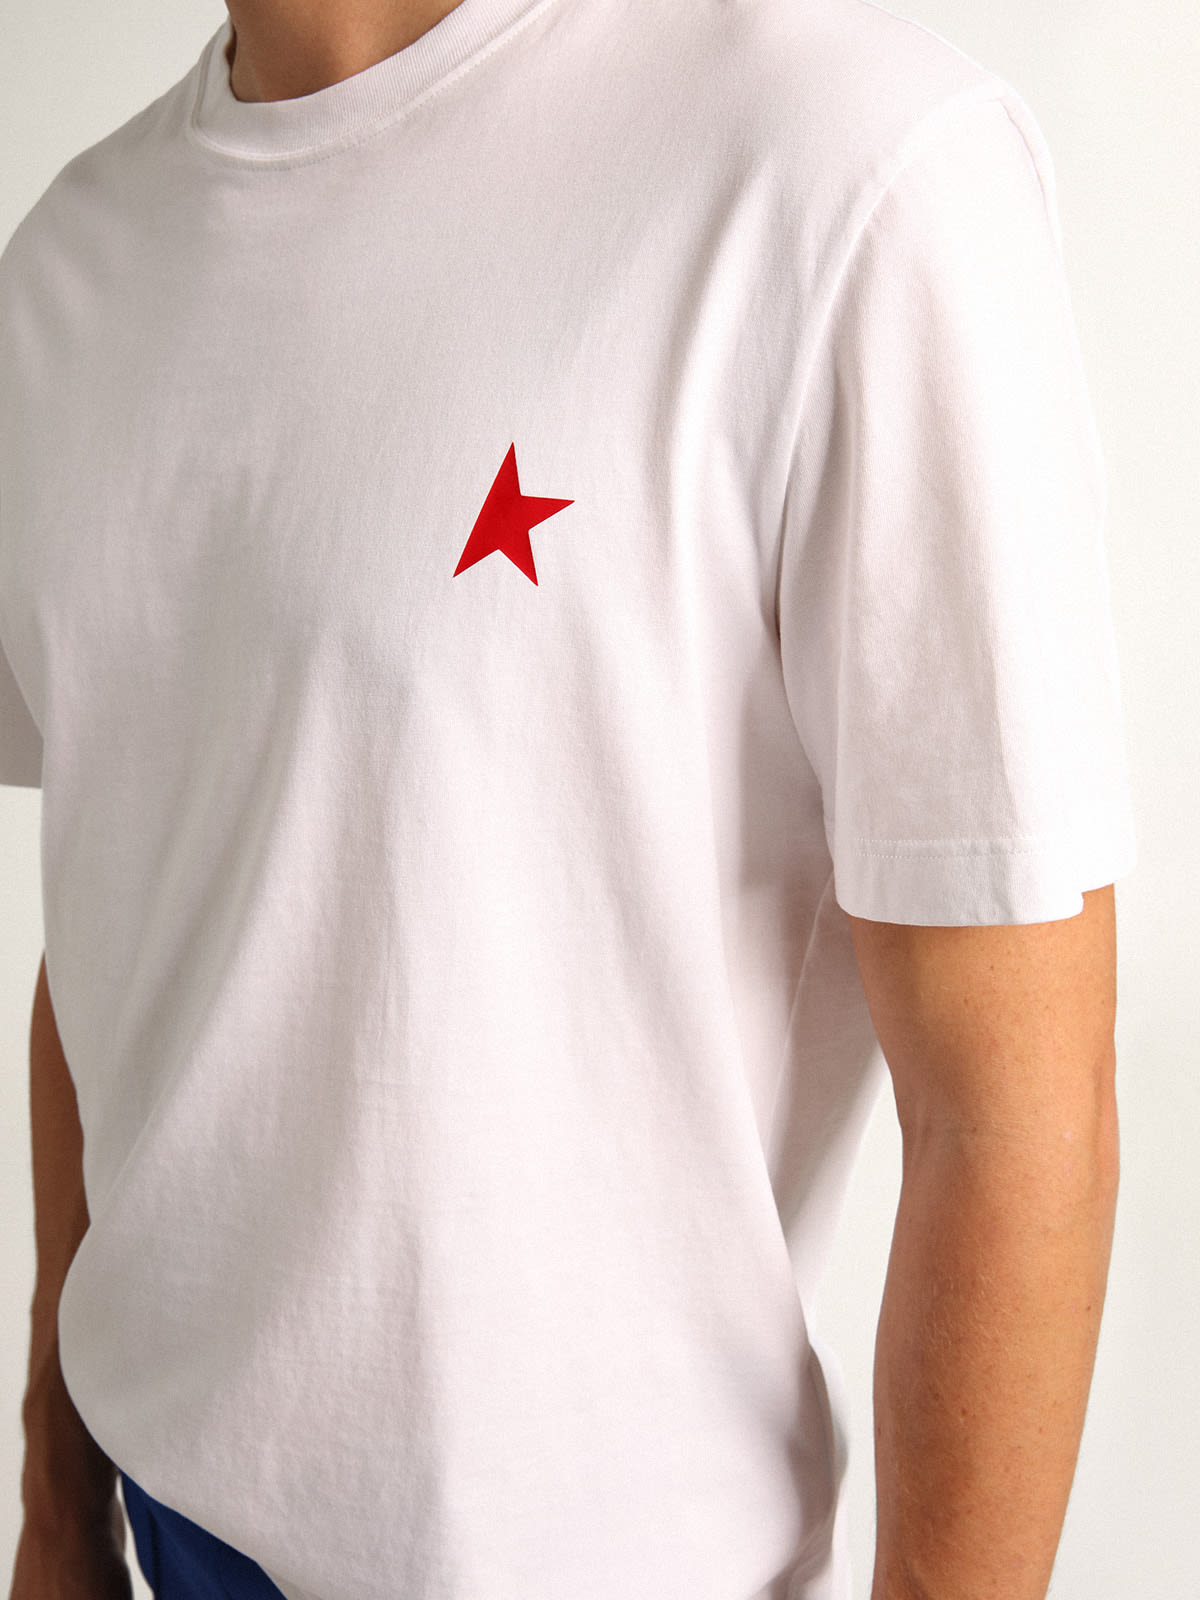 Golden Goose - T-shirt bianca Collezione Star con stella rossa a contrasto sul davanti in 